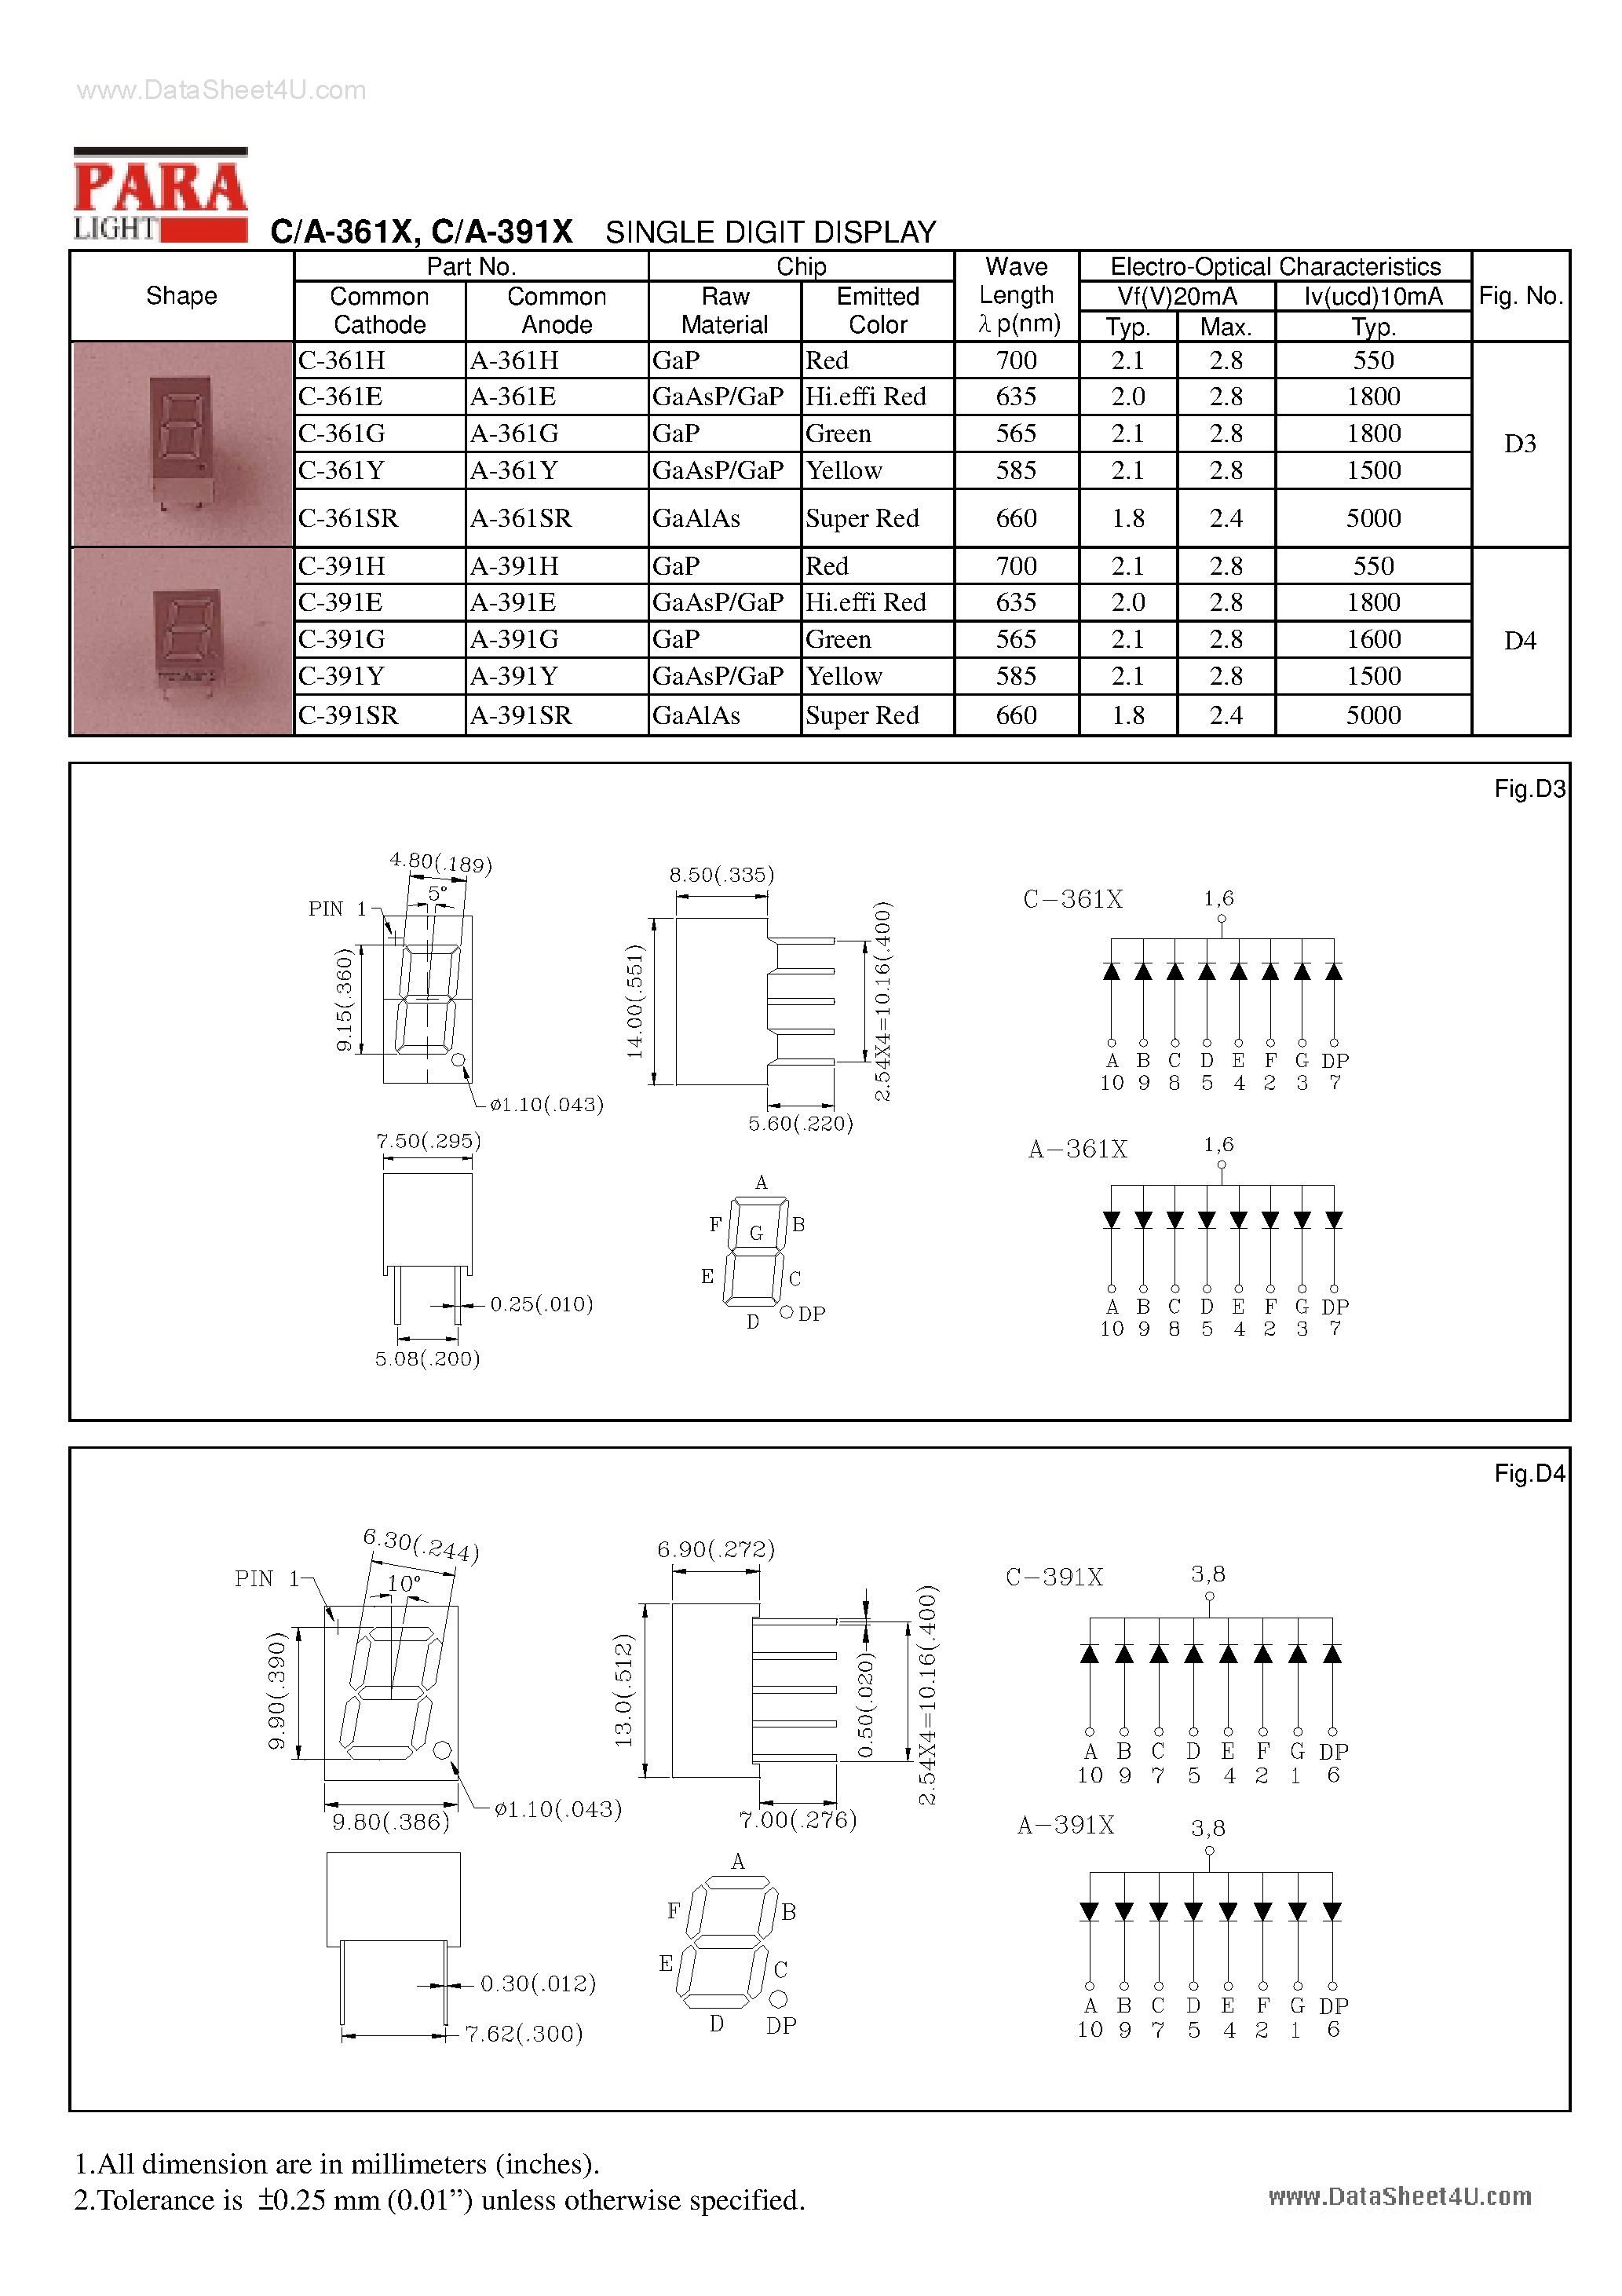 Даташит A-361x - (A-391x / A-361x) SINGLE DIGIT DISPLAY страница 1